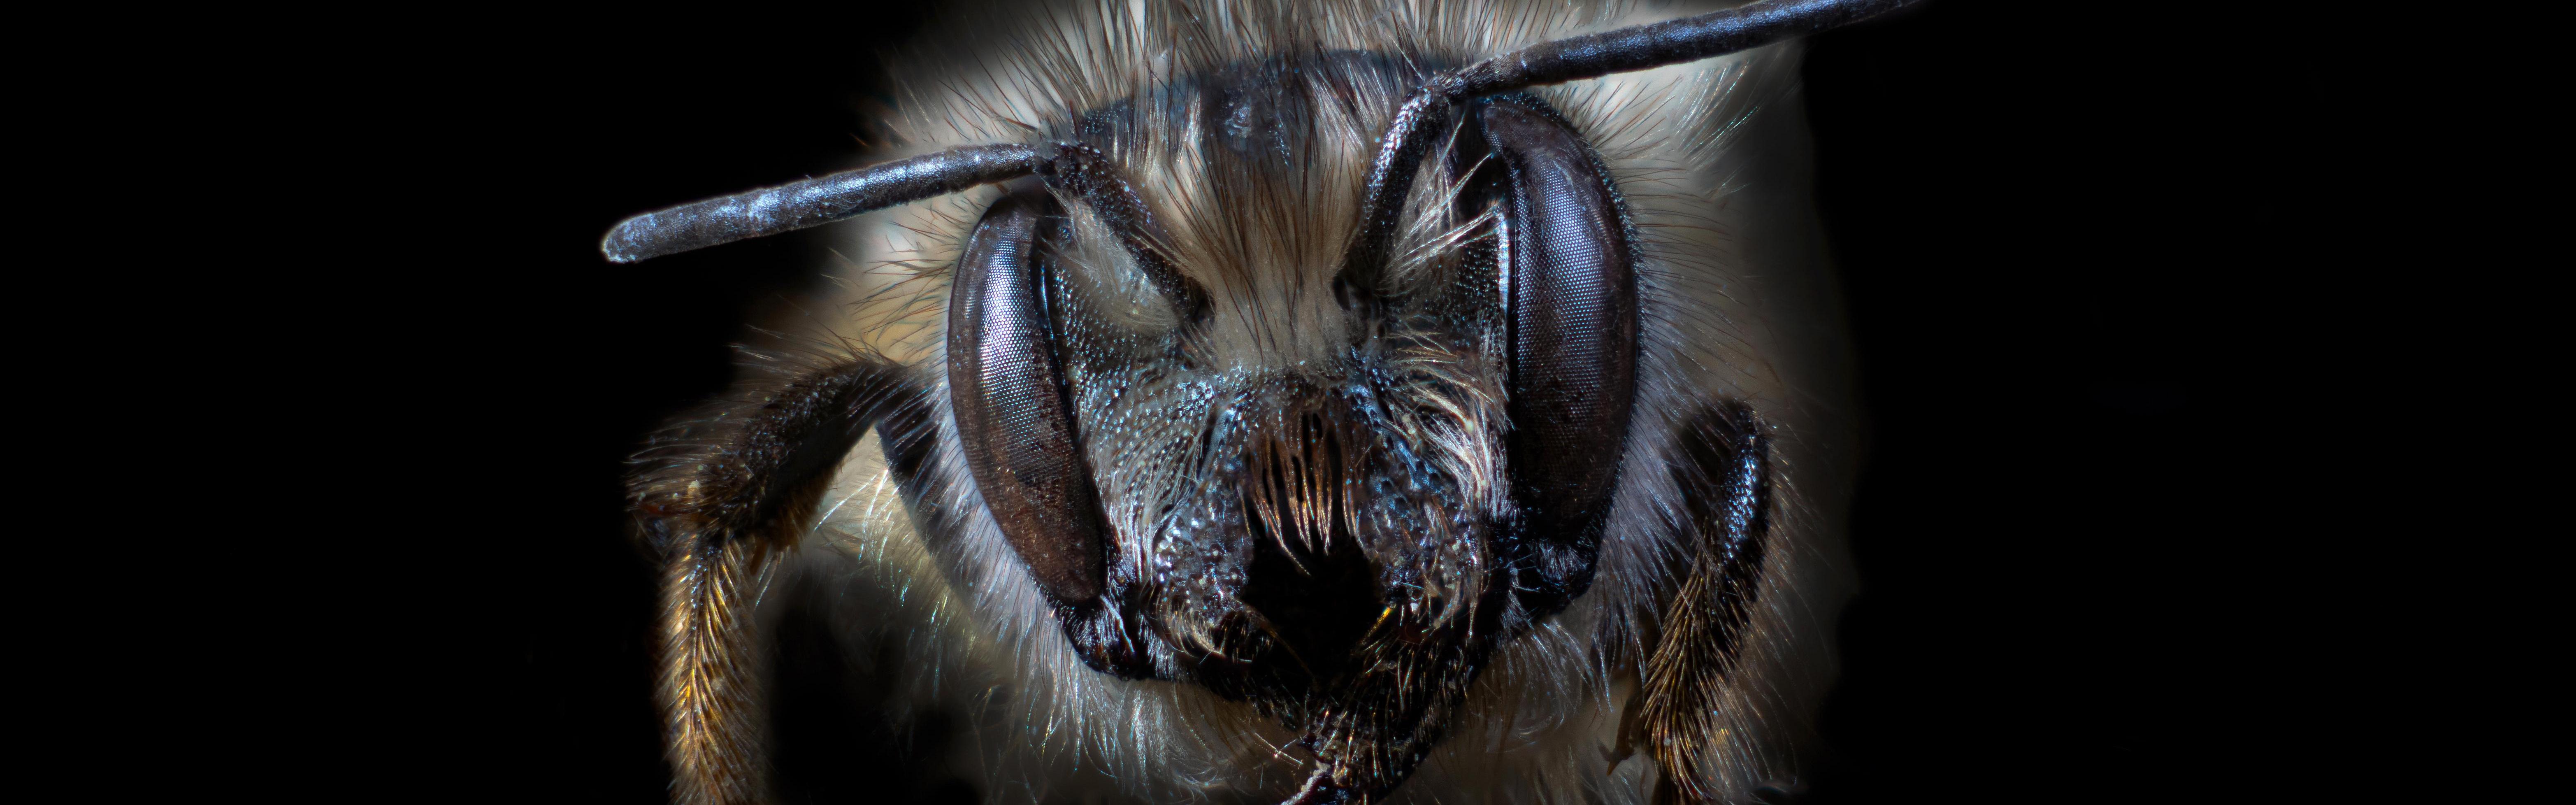 Photo of a non-native mason bee